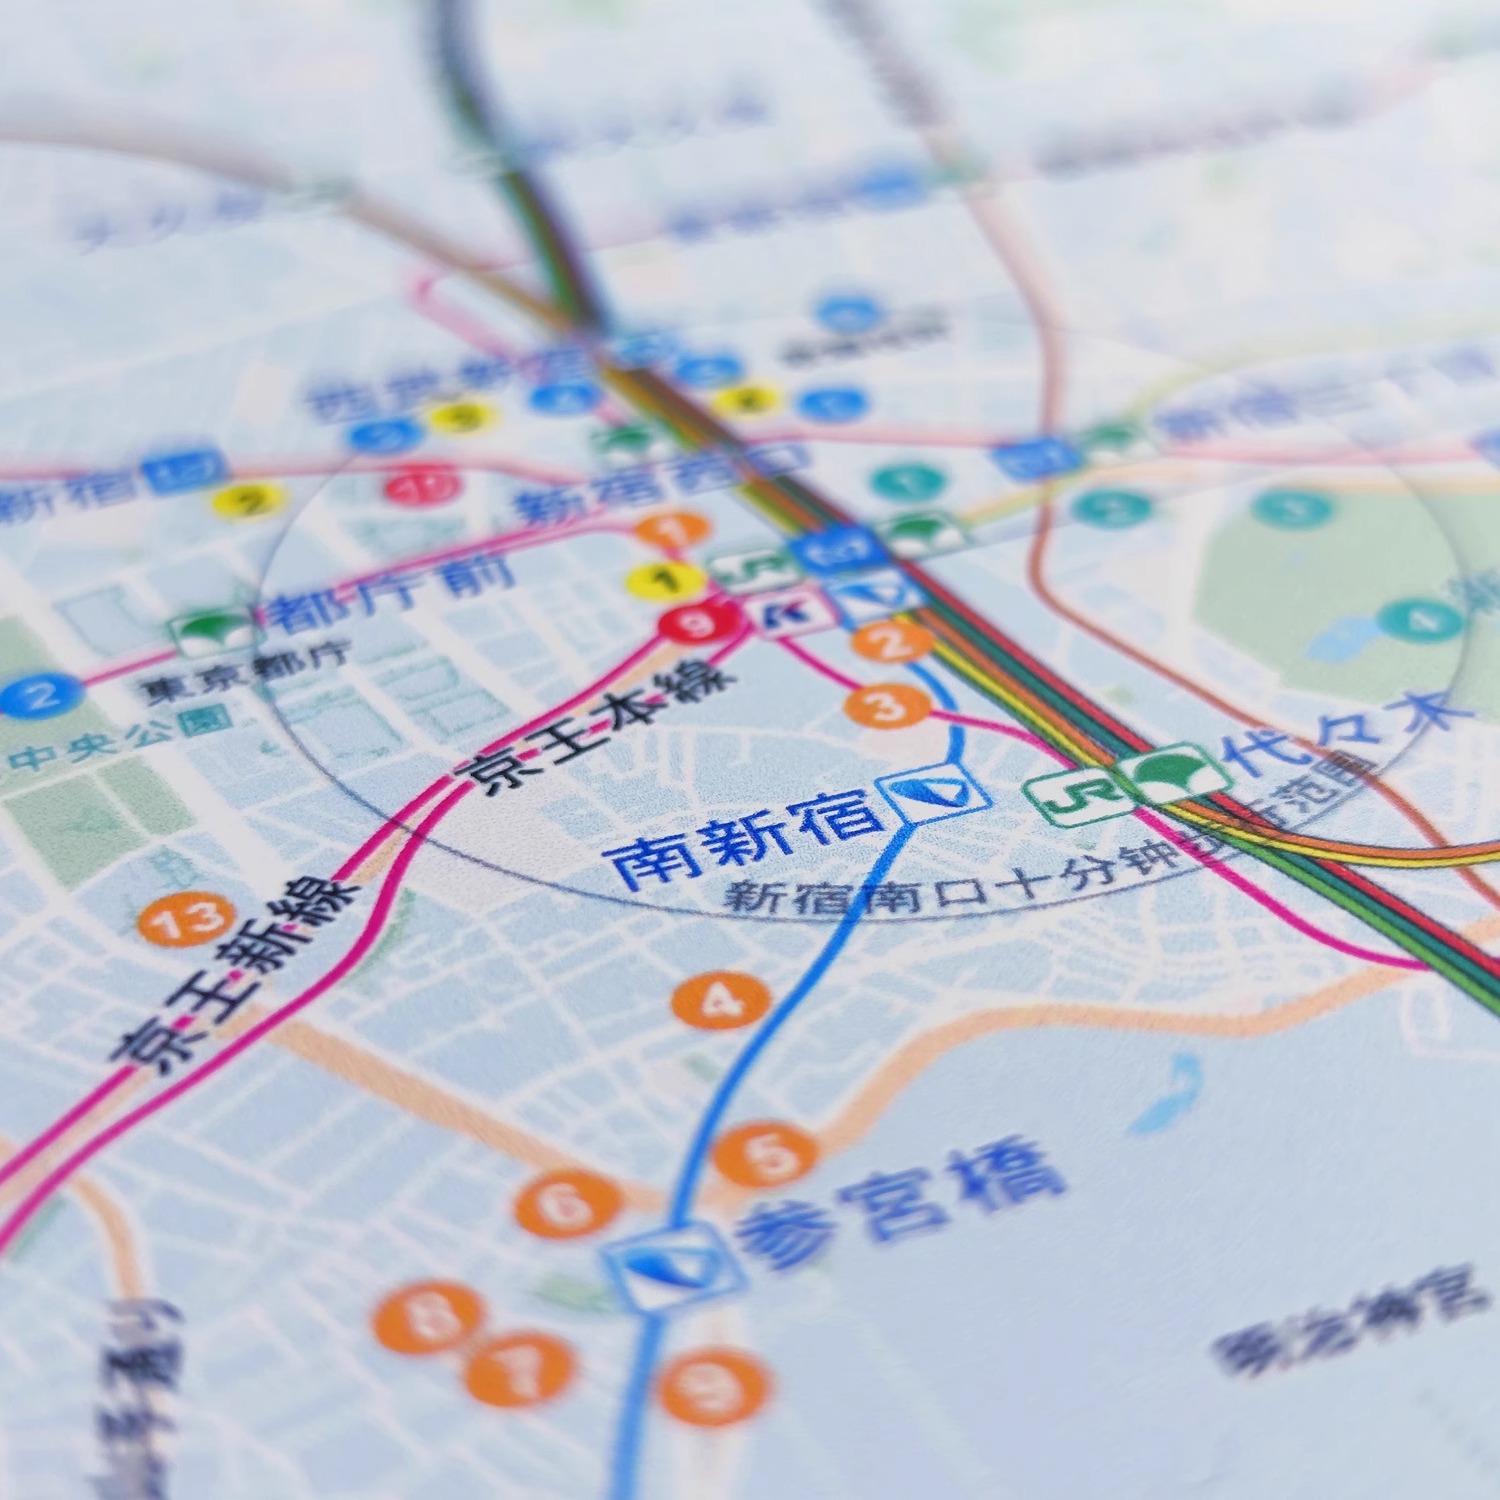 东京圣地巡礼指南图大尺寸日本旅游打卡取景地周边精美收藏地图-图0